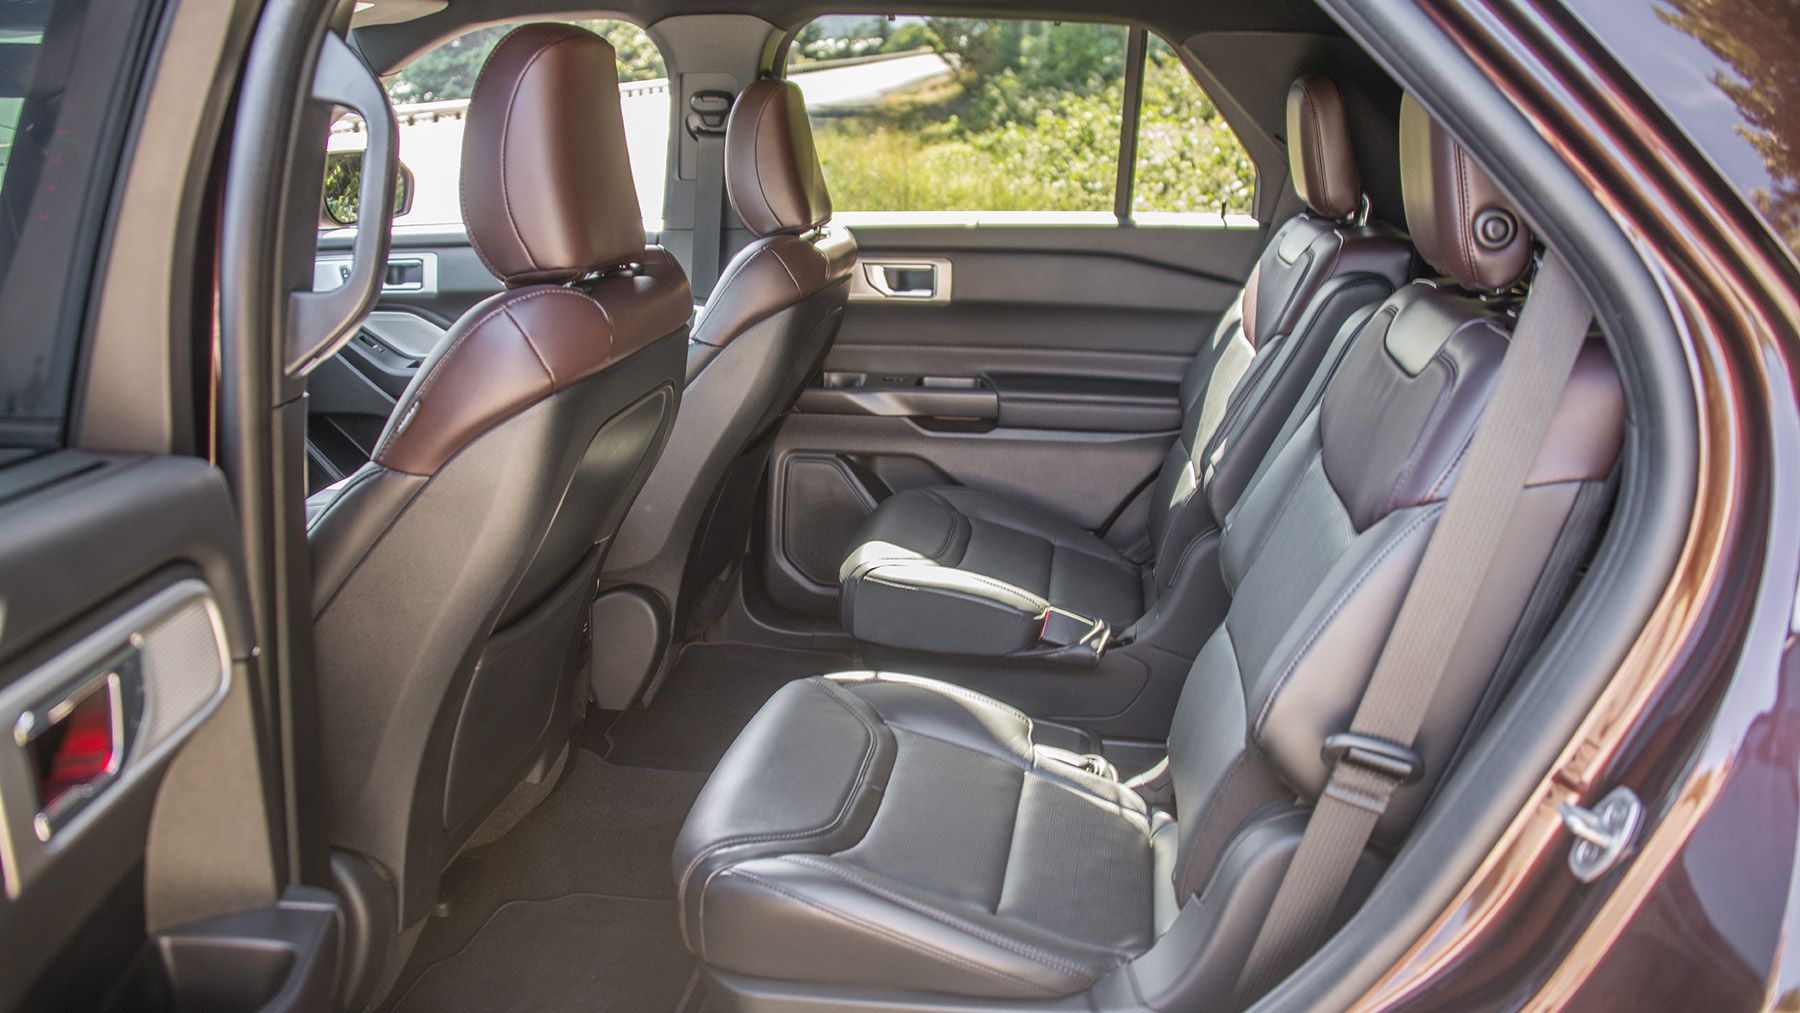 Discover more than 135 2020 ford explorer platinum interior latest